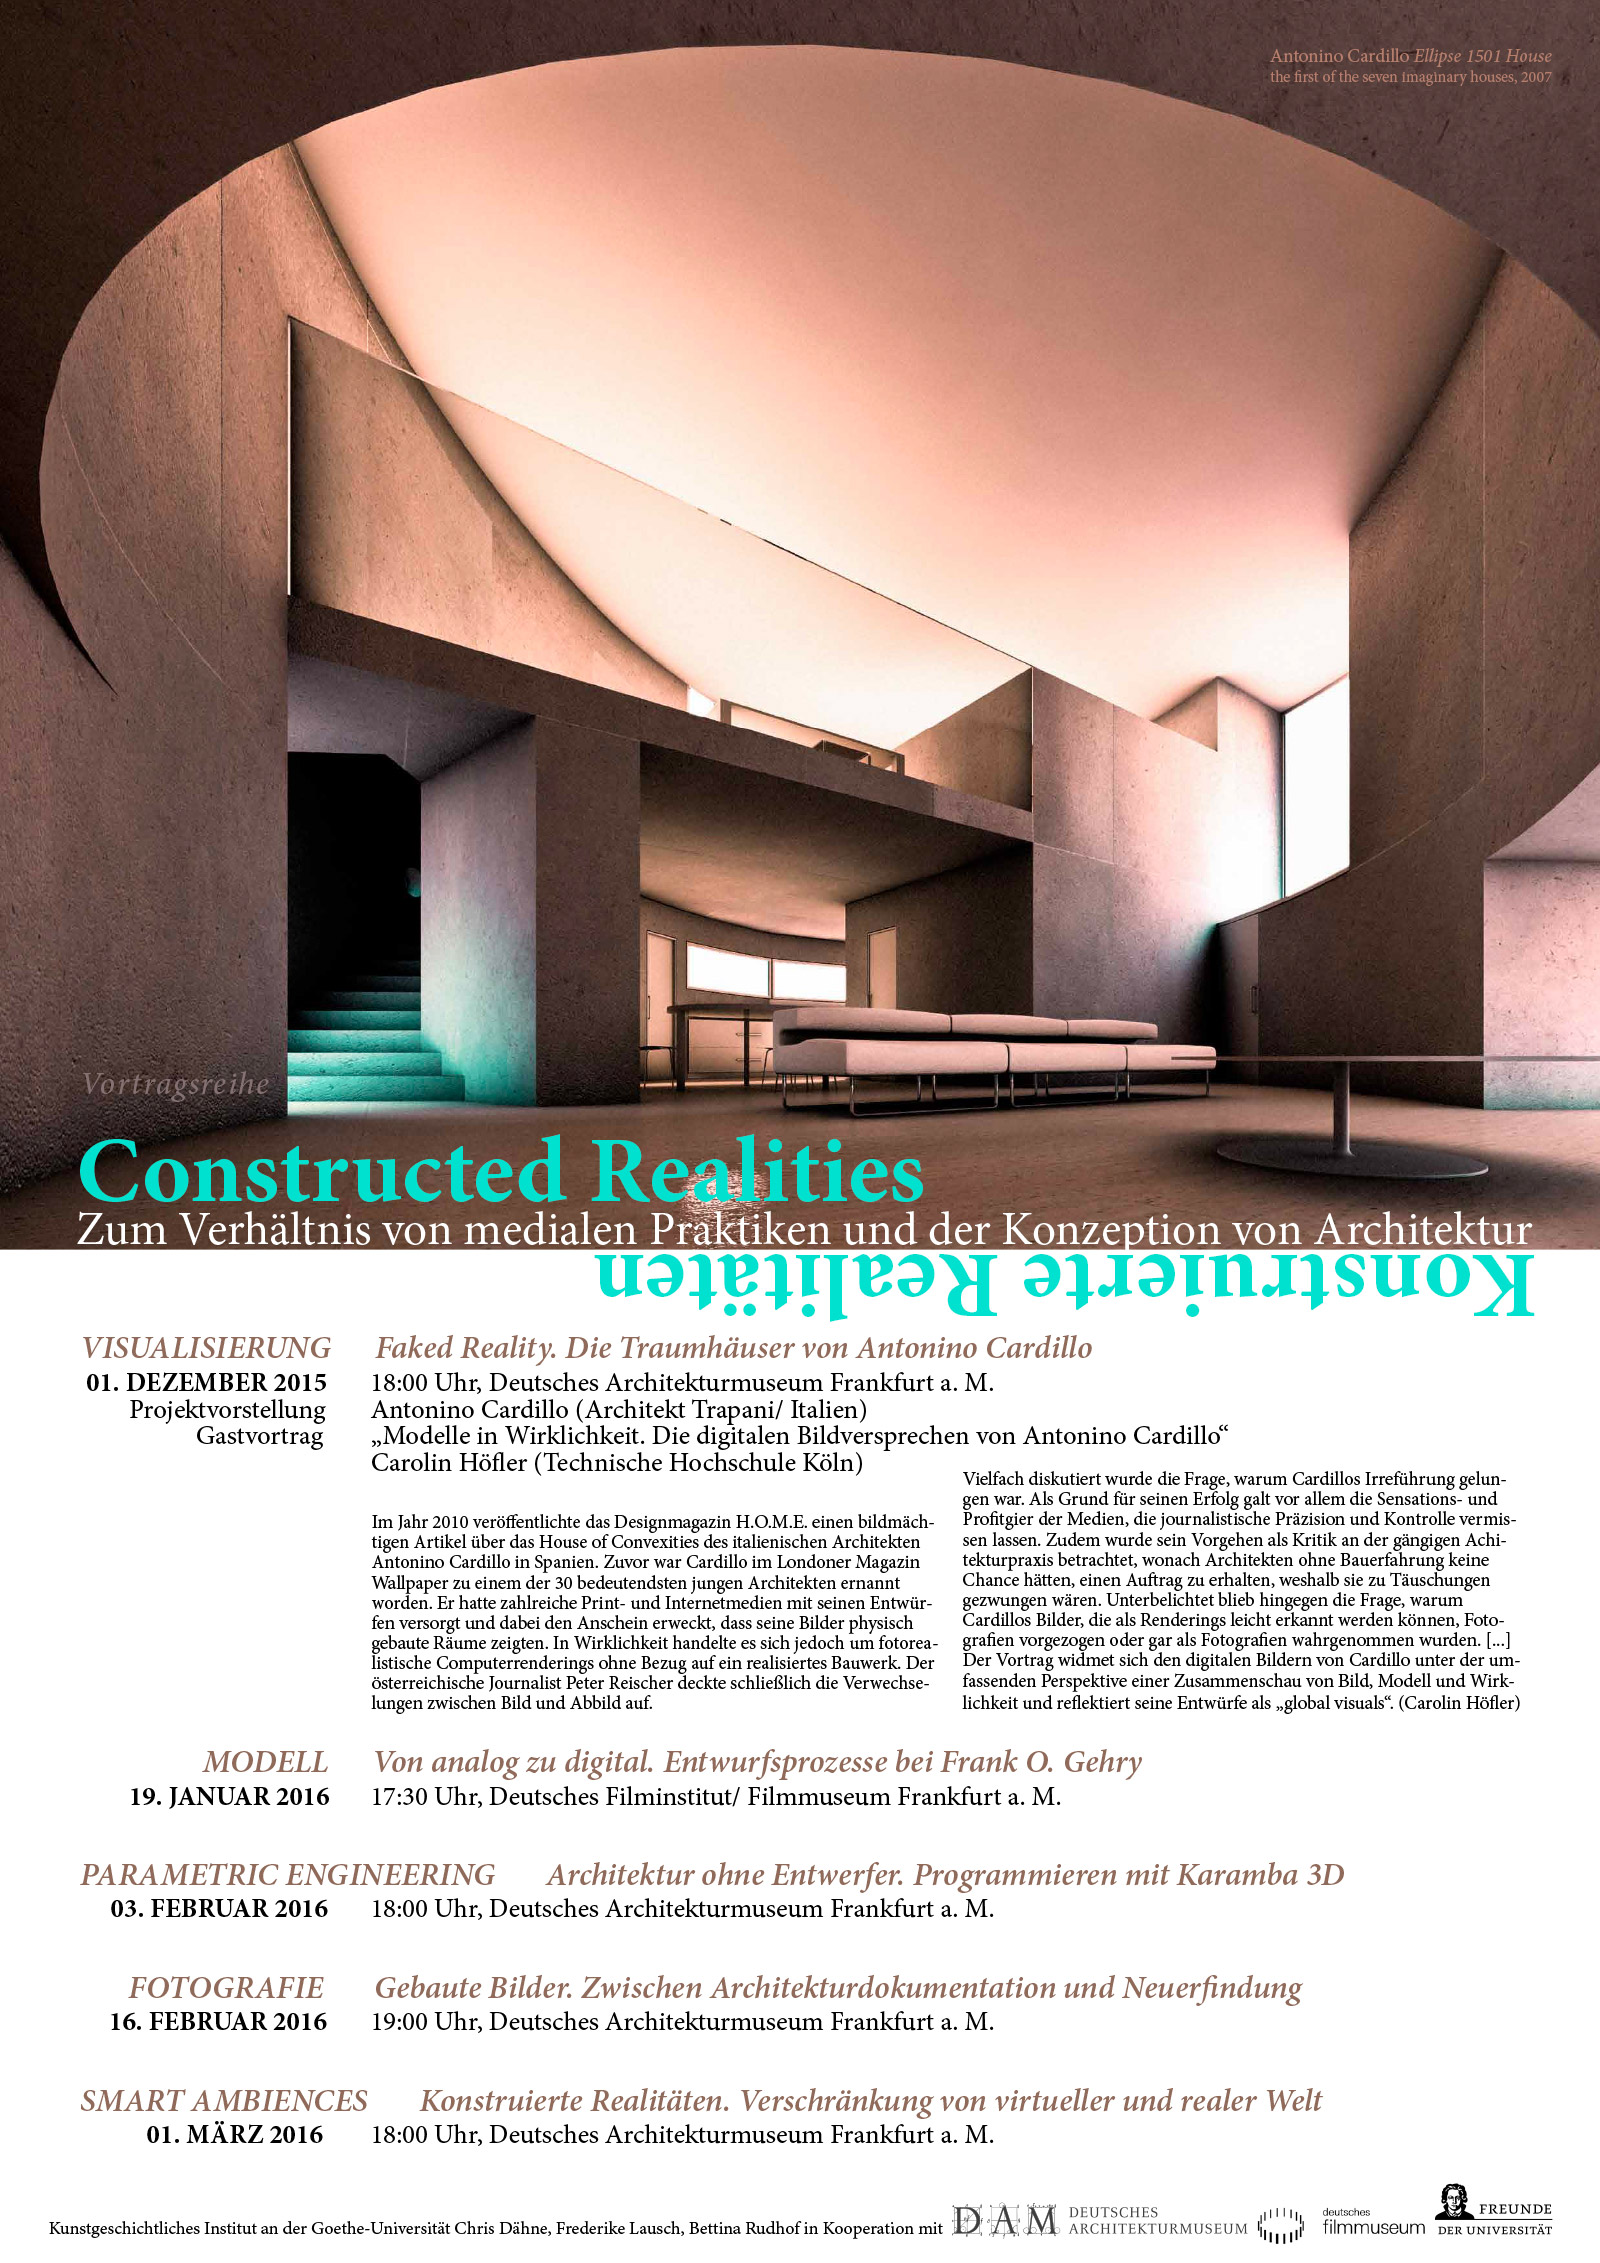 Poster Constructed Realities della Goethe–Universität su Antonino Cardillo